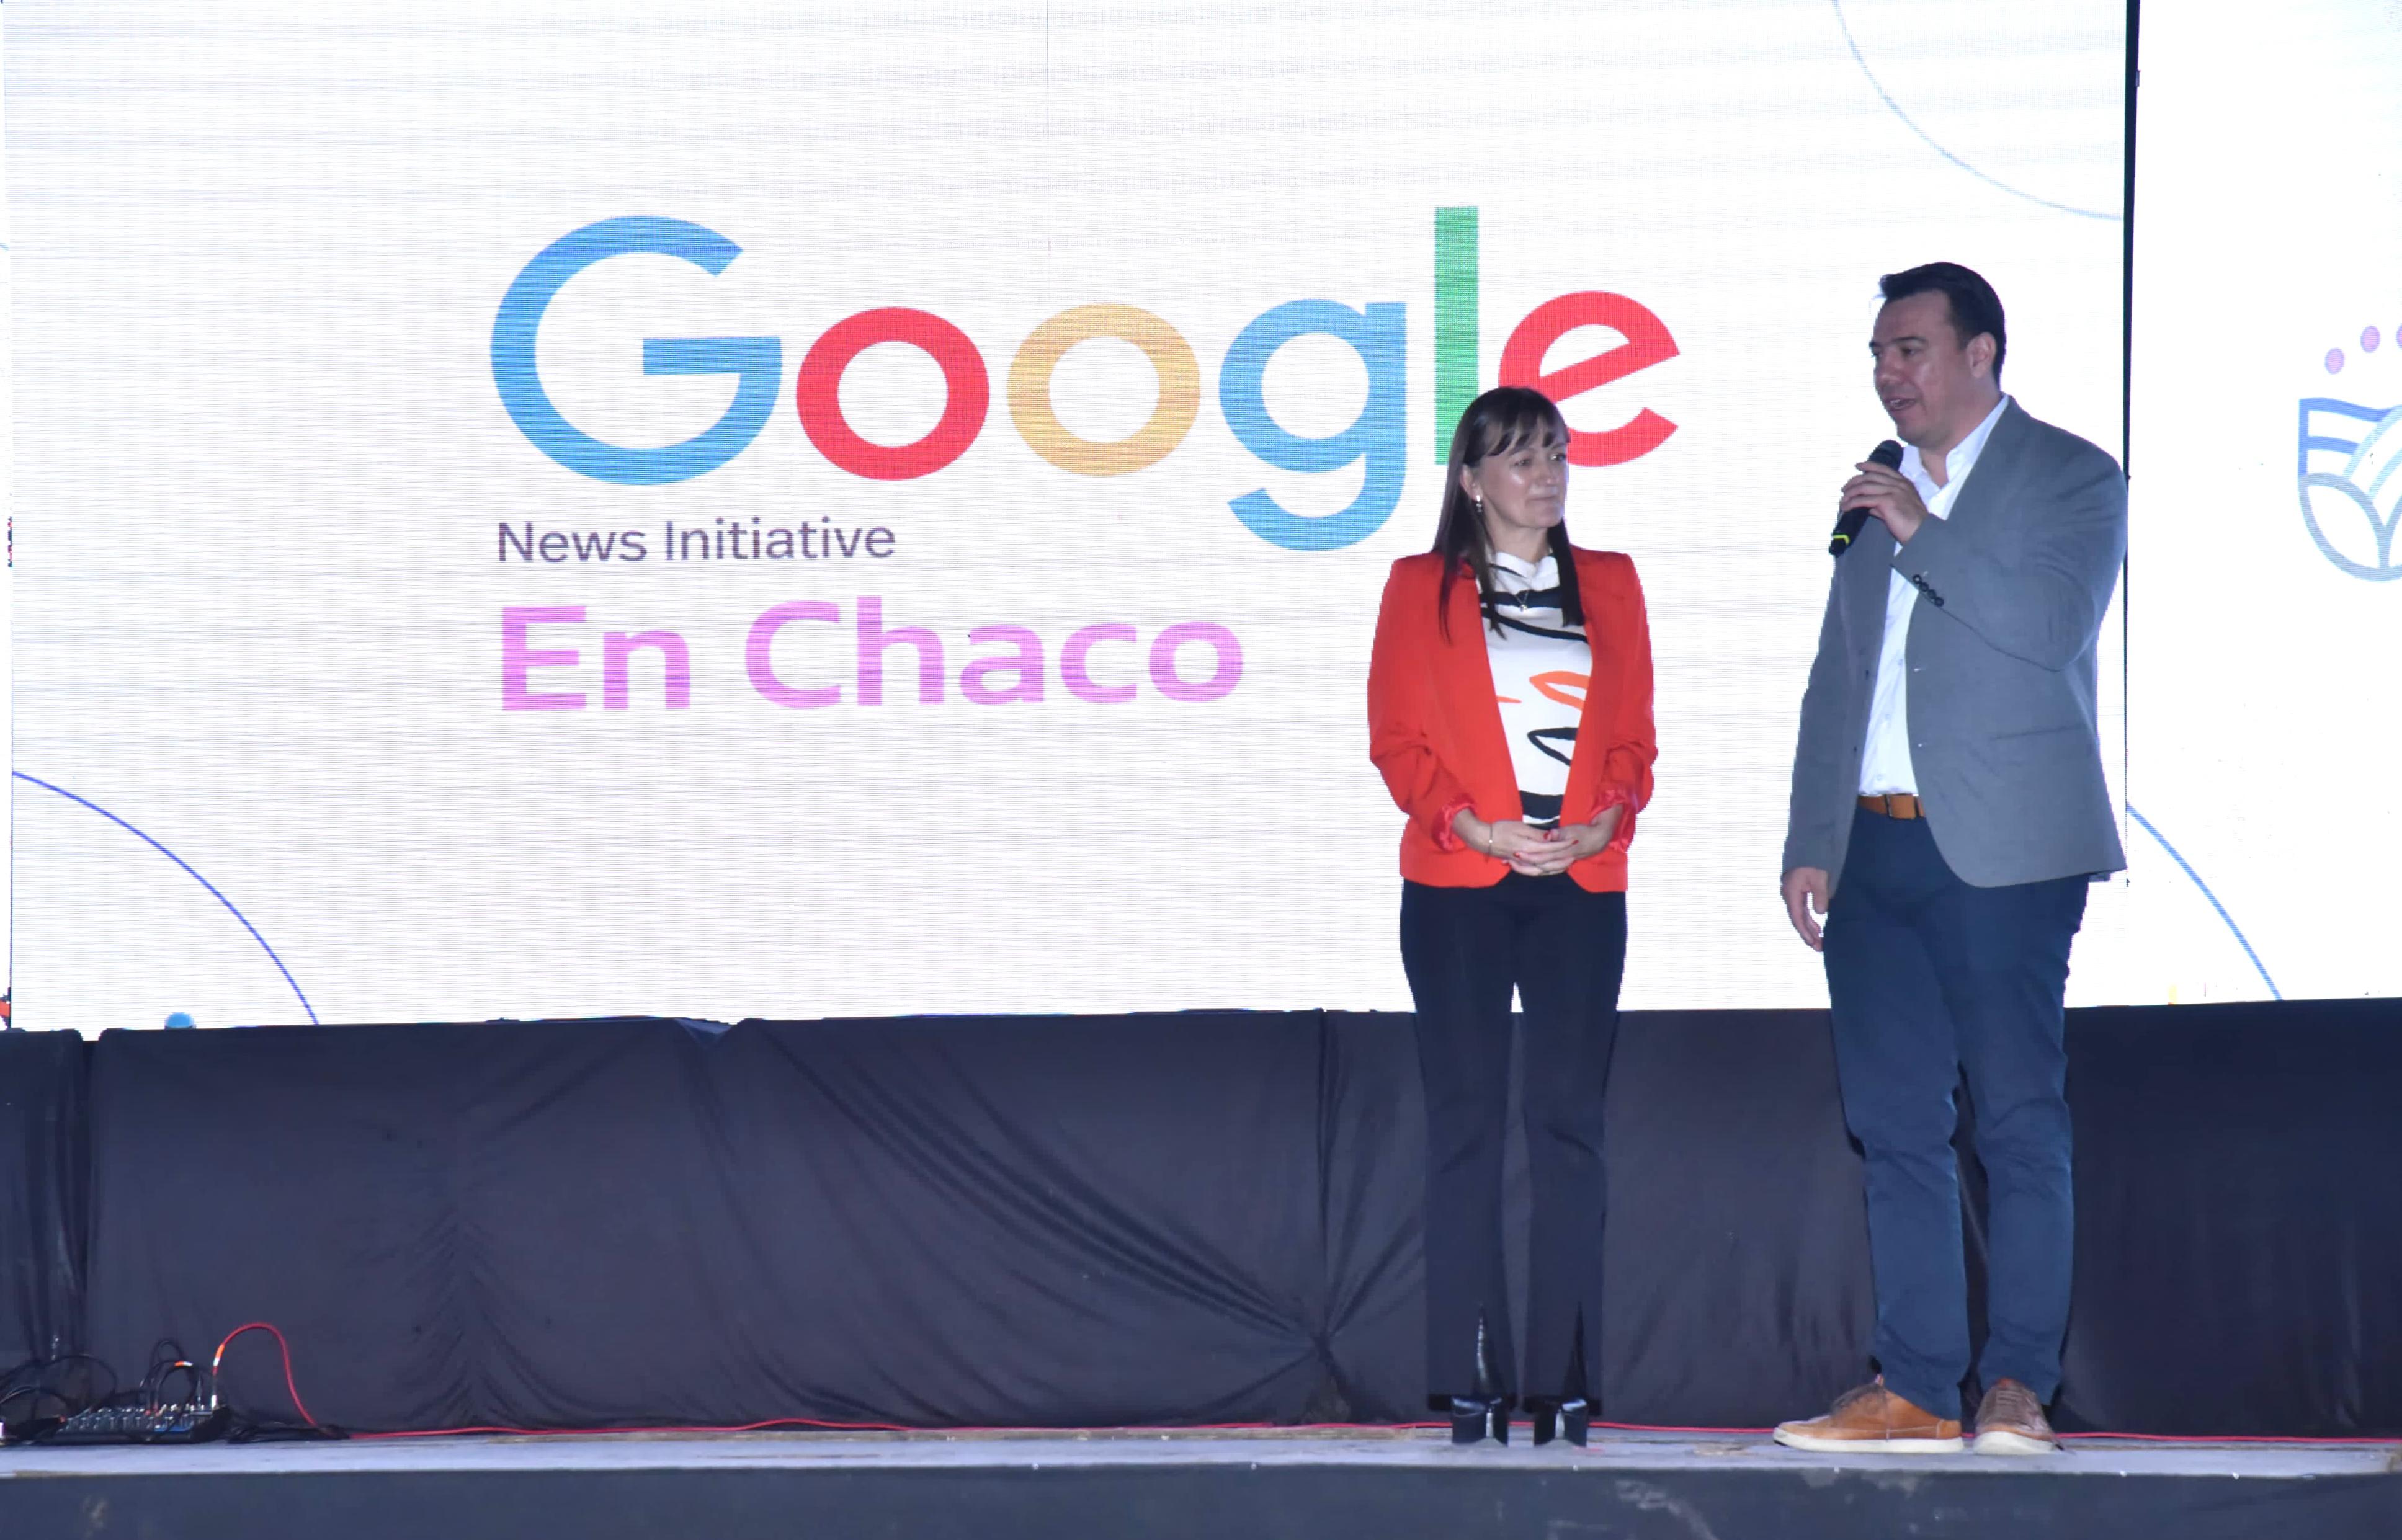 Google News Initiative desembarcó hoy en el Chaco con sus capacitaciones